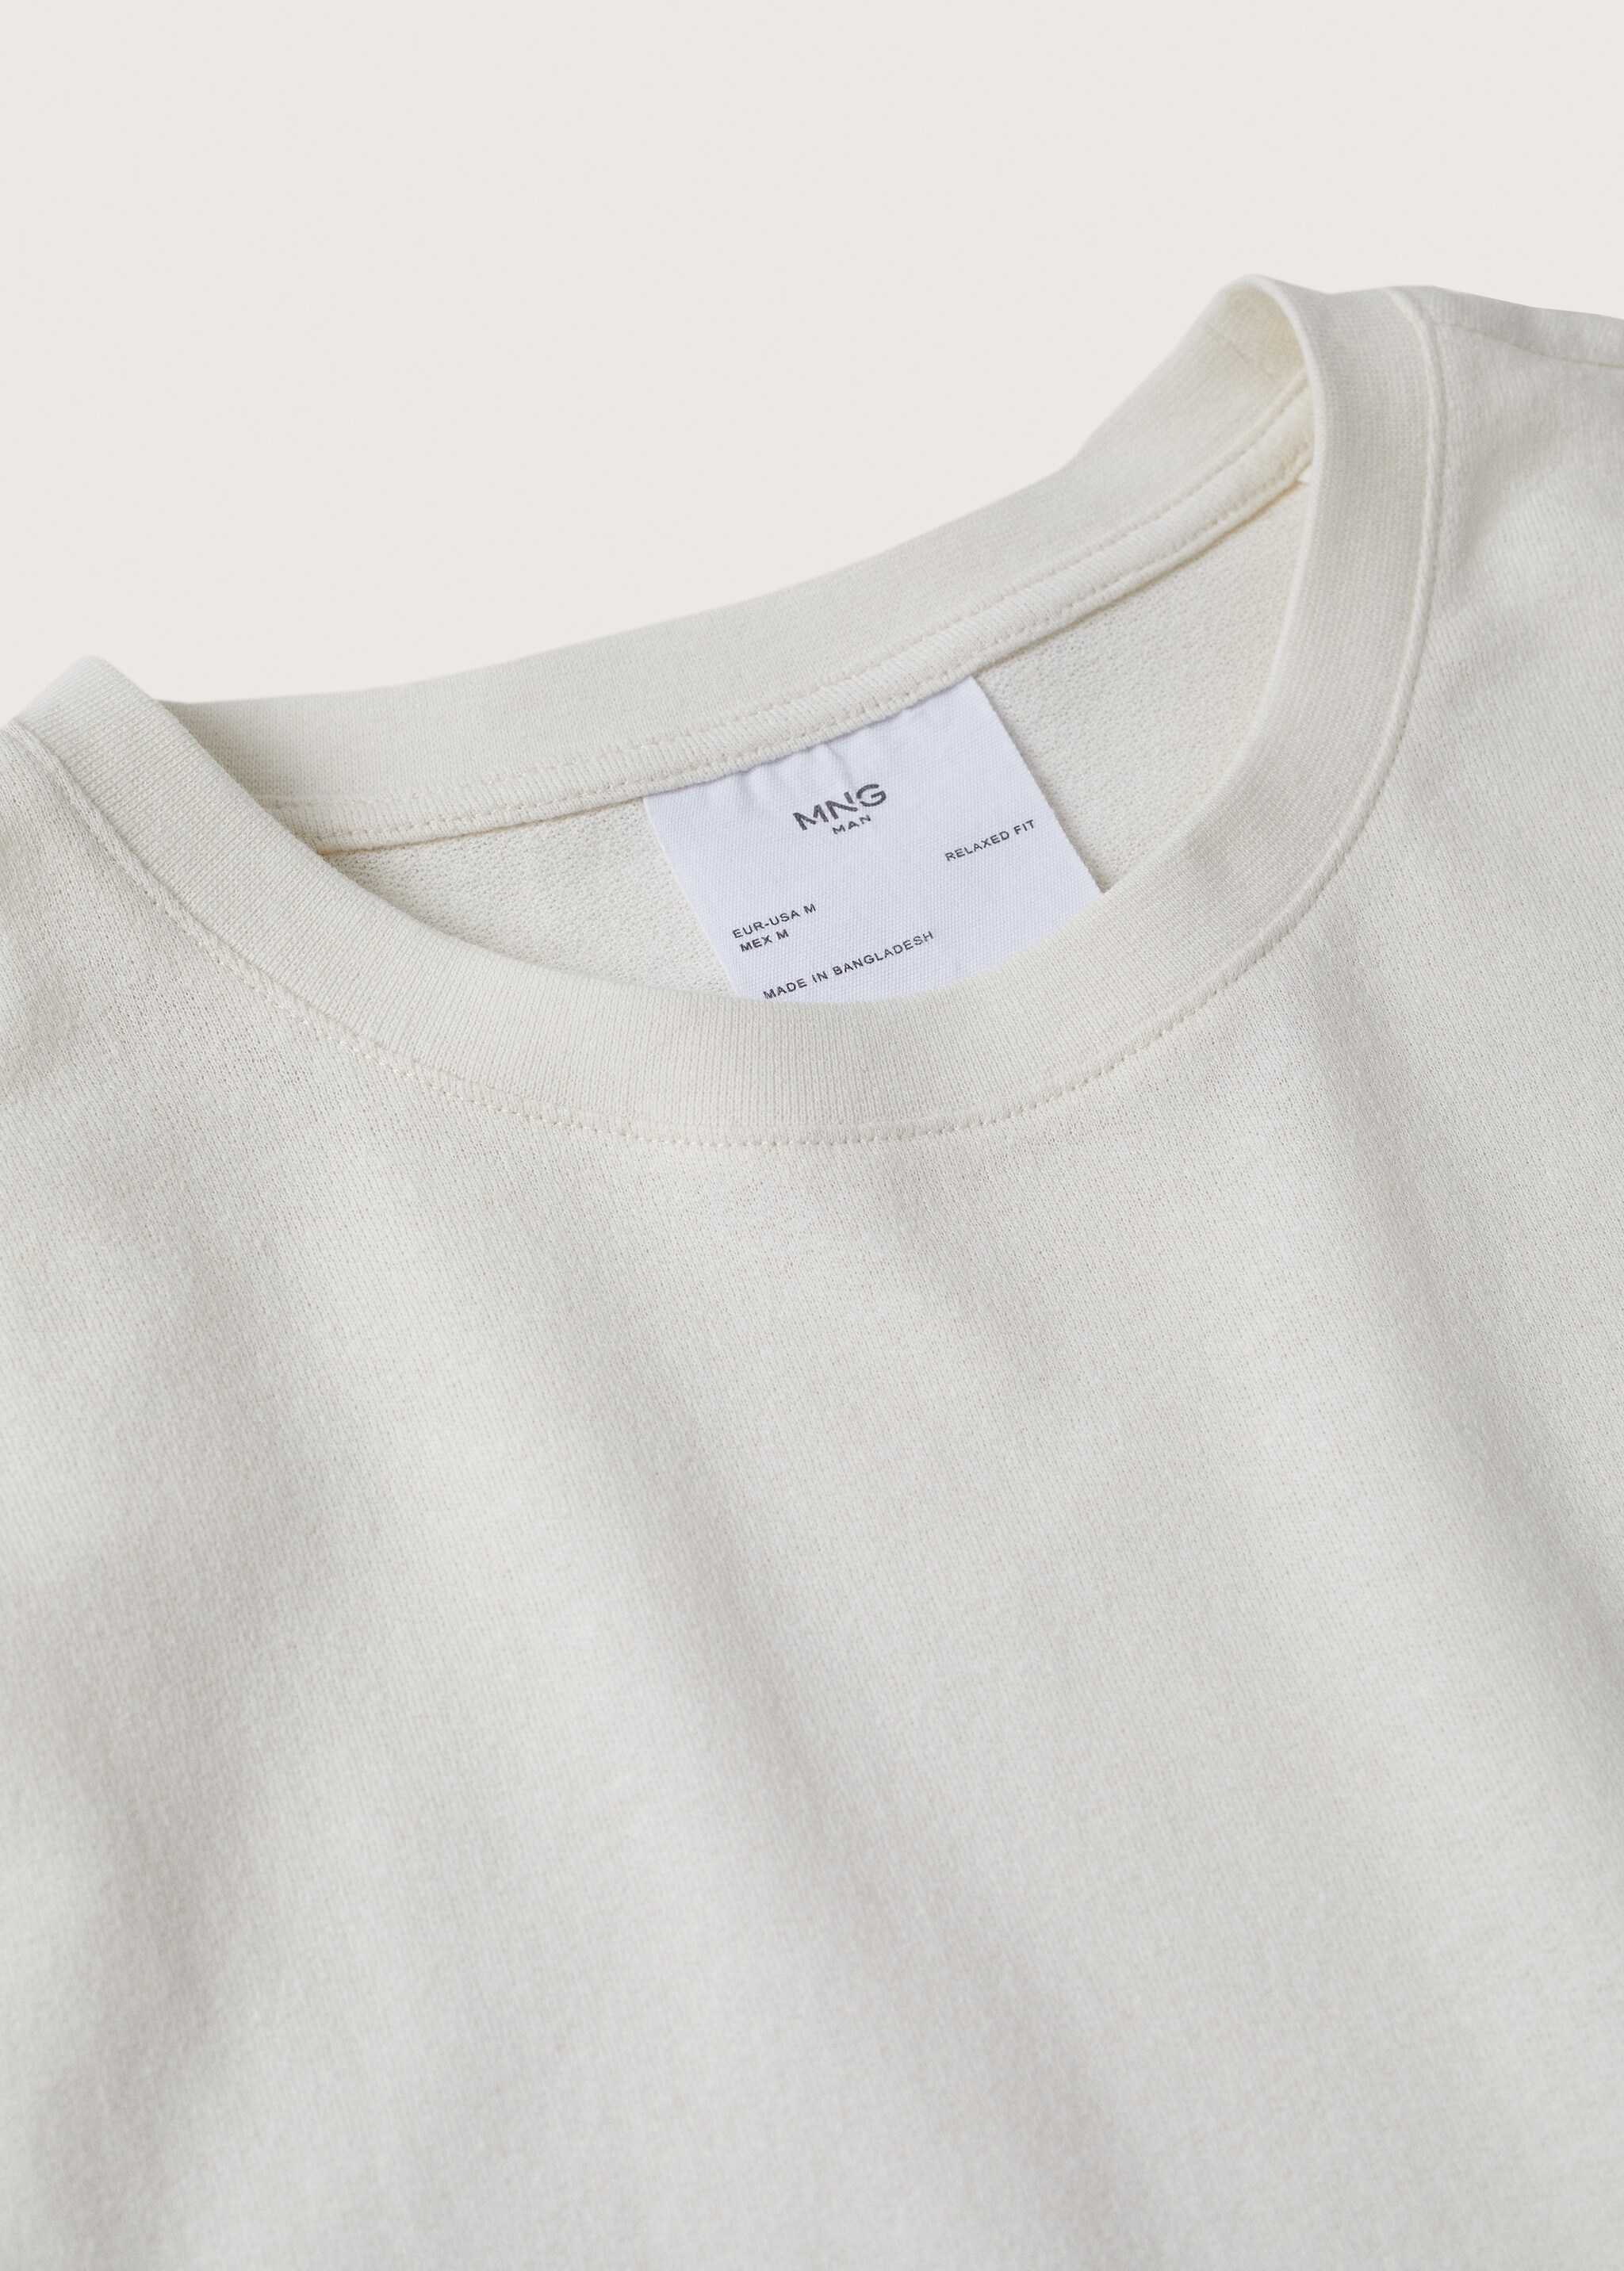 Camiseta algodón lino - Detalle del artículo 8